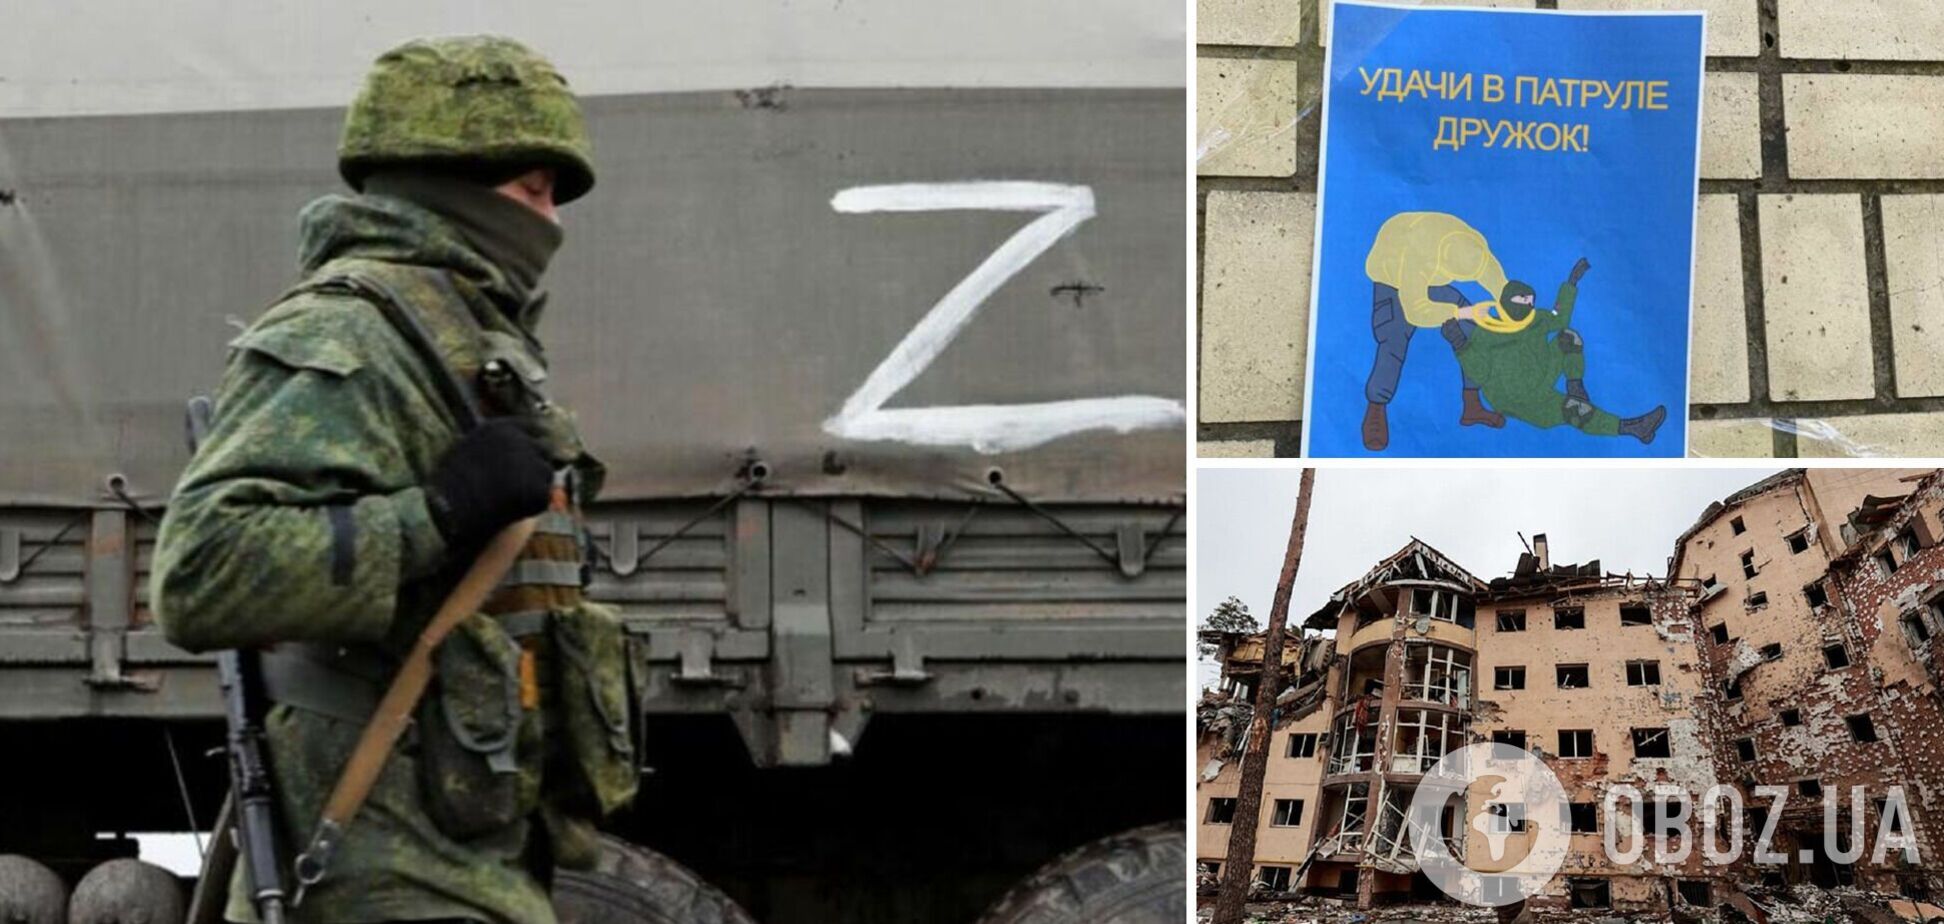 Армия России столкнулась с сопротивлением партизан в Украине